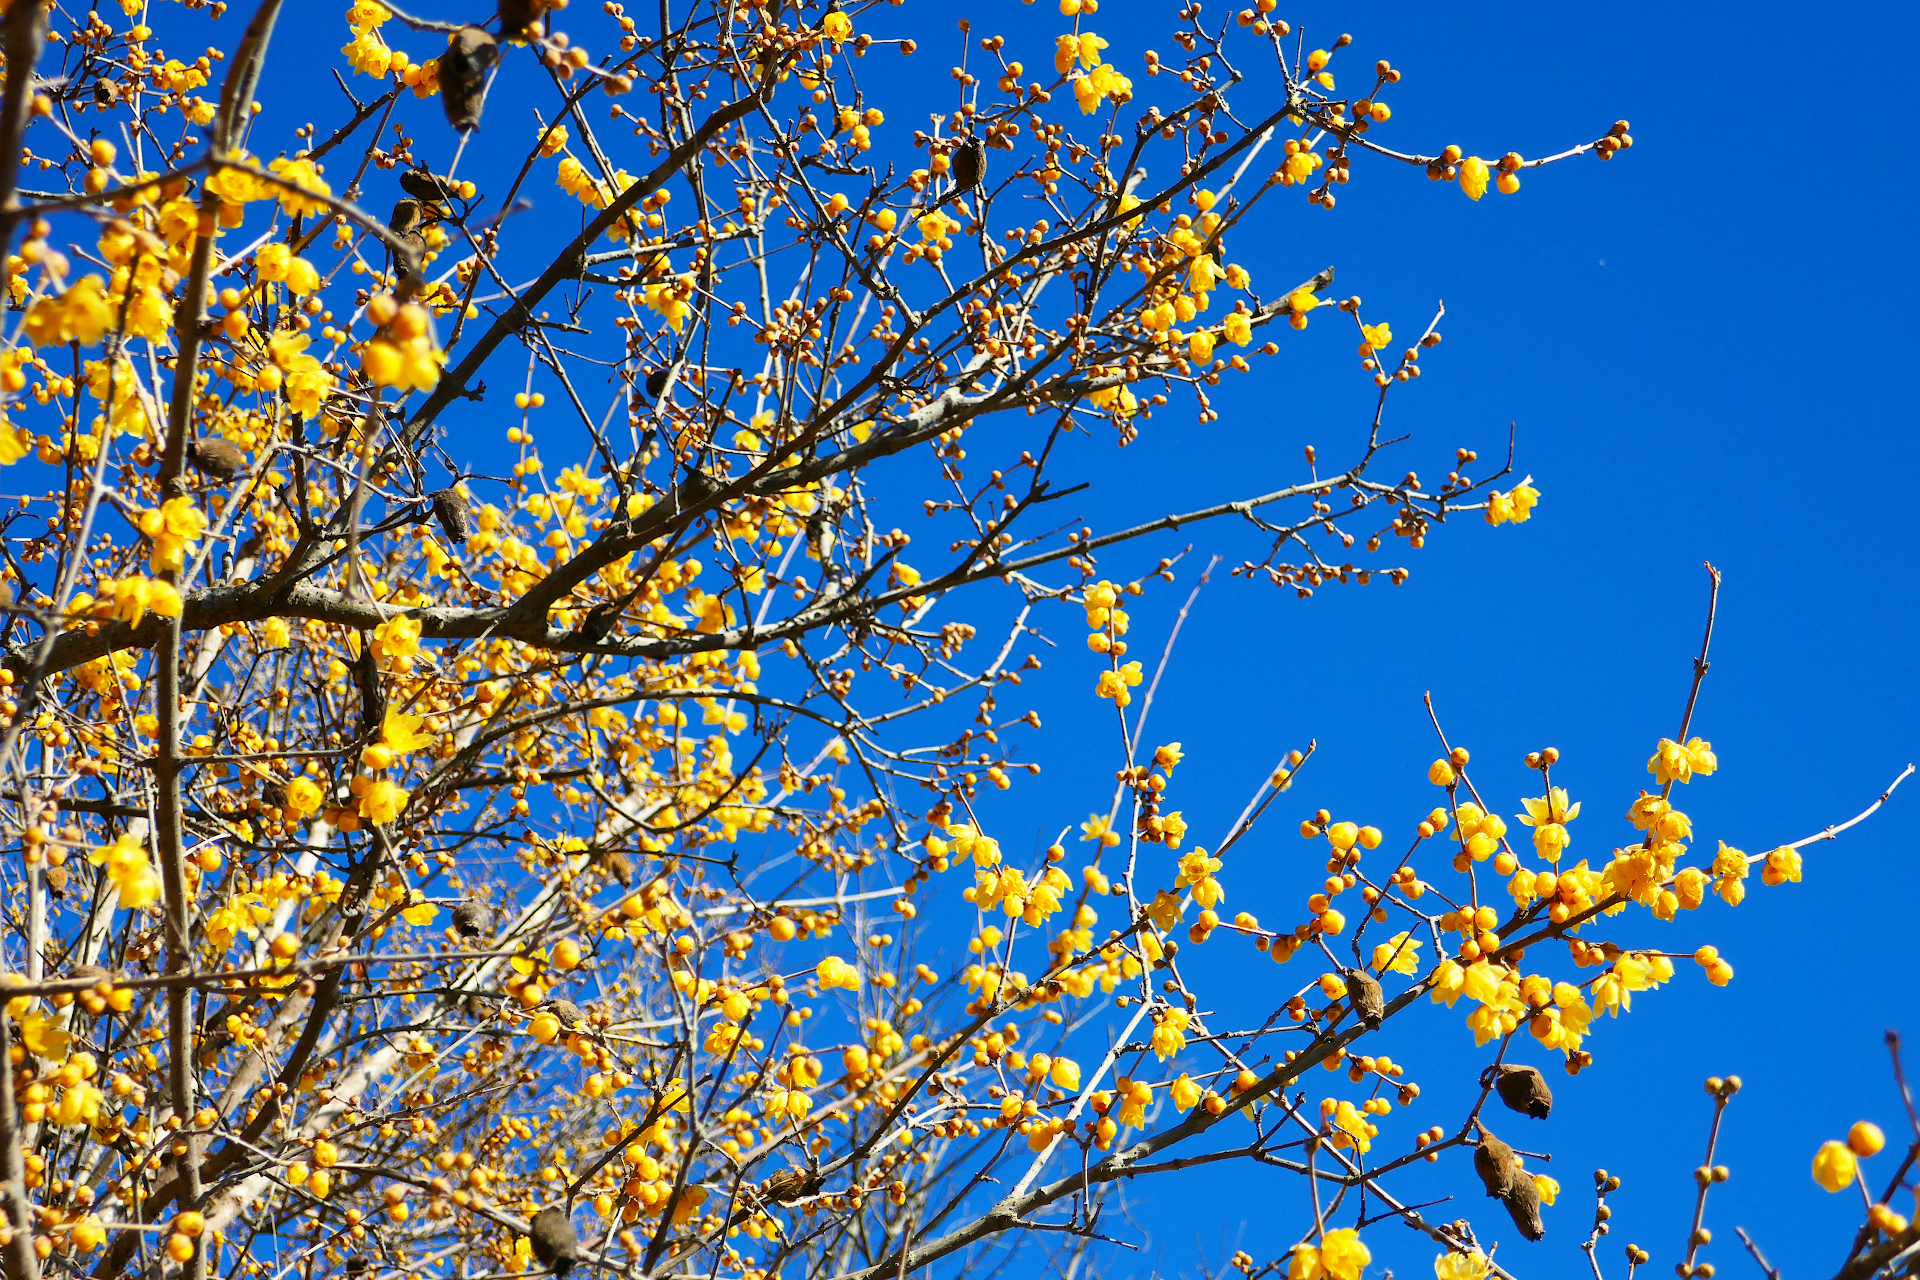 蝋梅の木を撮影した写真。 濃い黄色の花を沢山咲かせている。 枝には枯れて茶色く萎れた実が幾つか残っている。